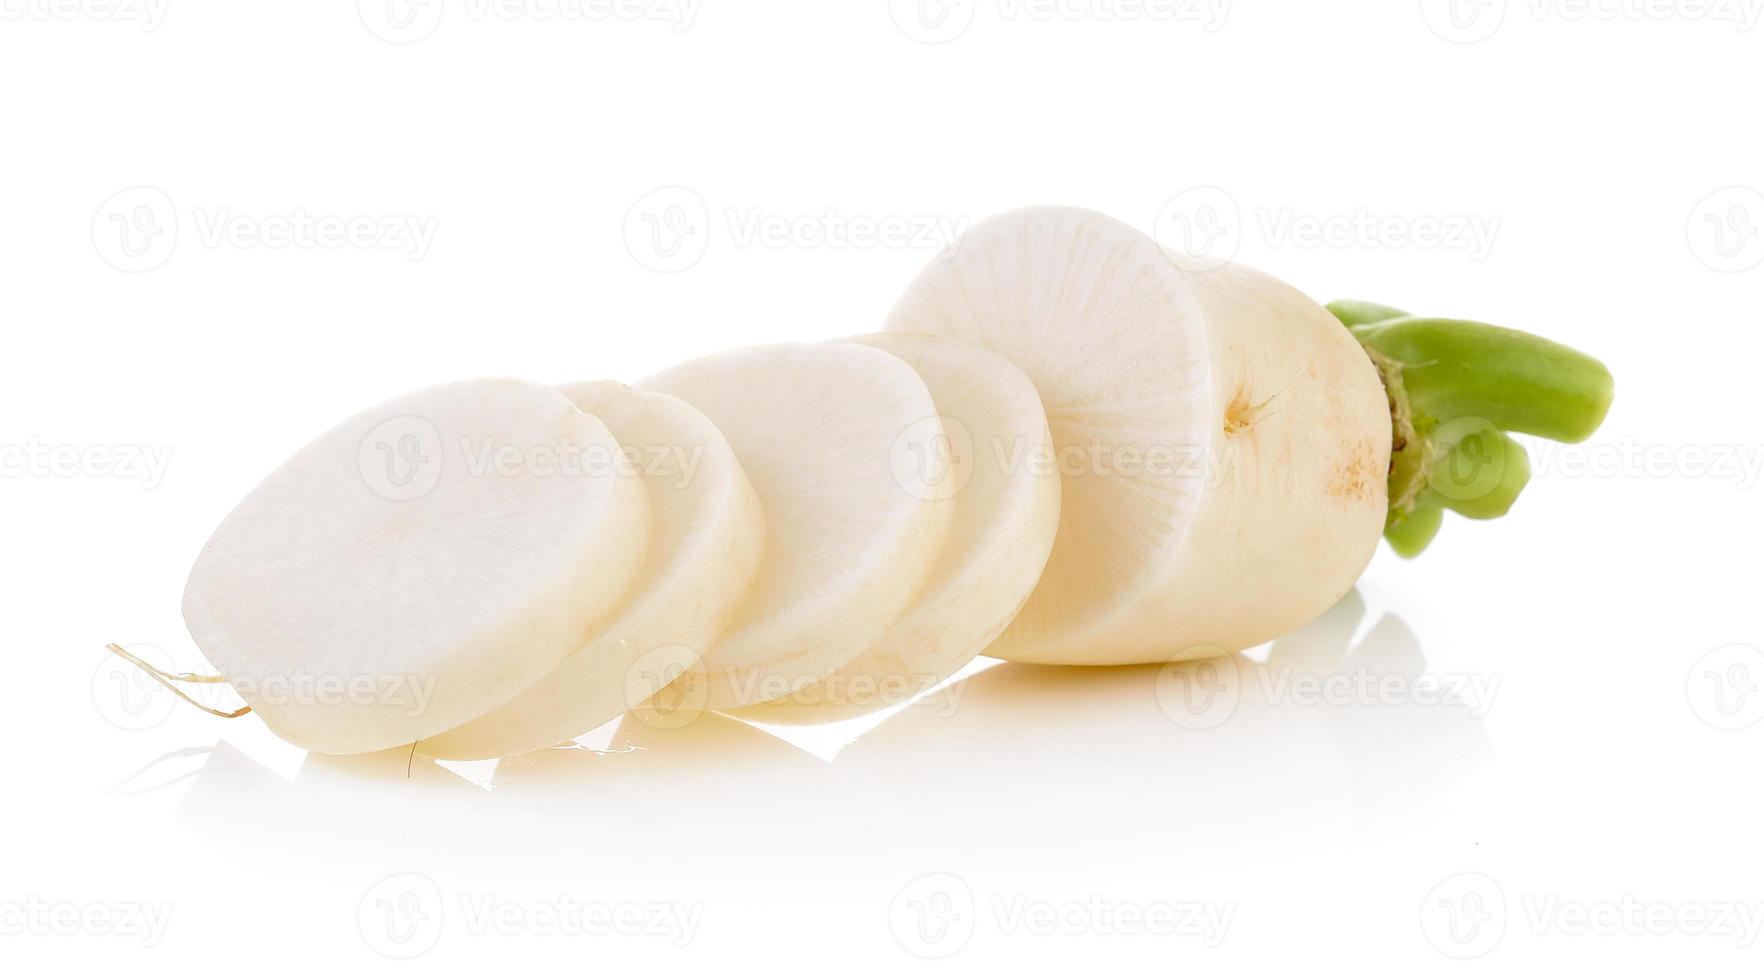 Daikon radishes isolated on white background photo